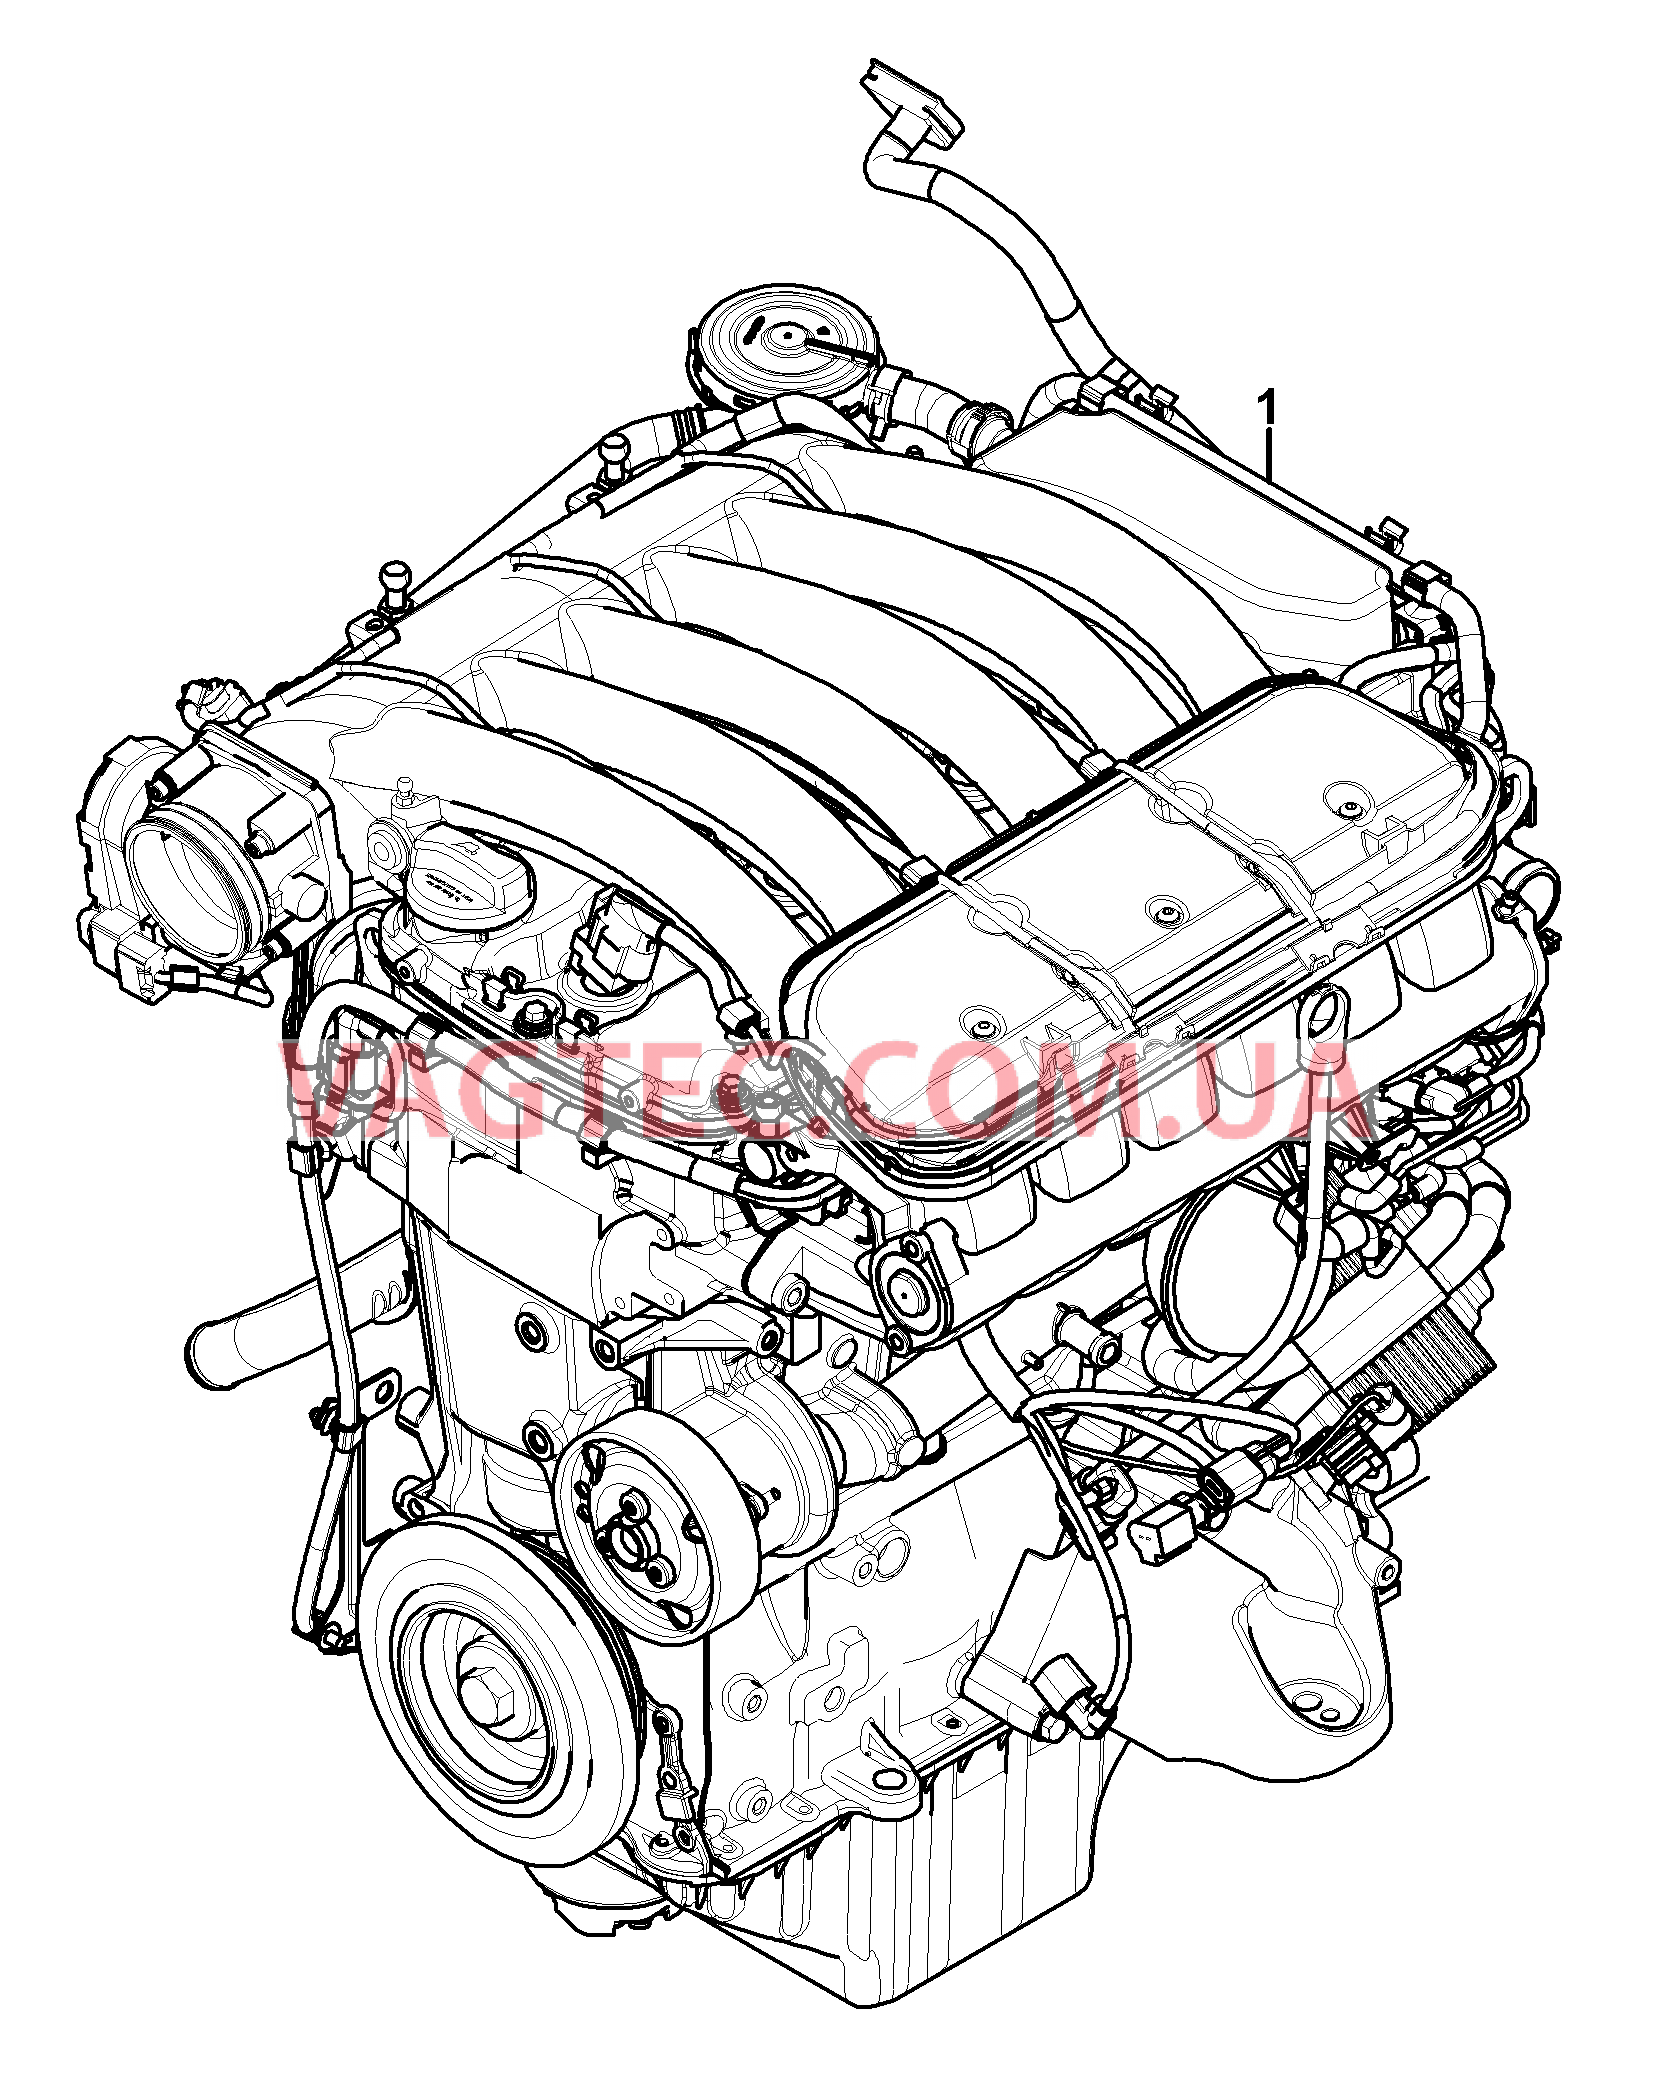 101-001 Запасной двигатель
						
						M02.2Y для PORSCHE Cayenne 2003-2006USA